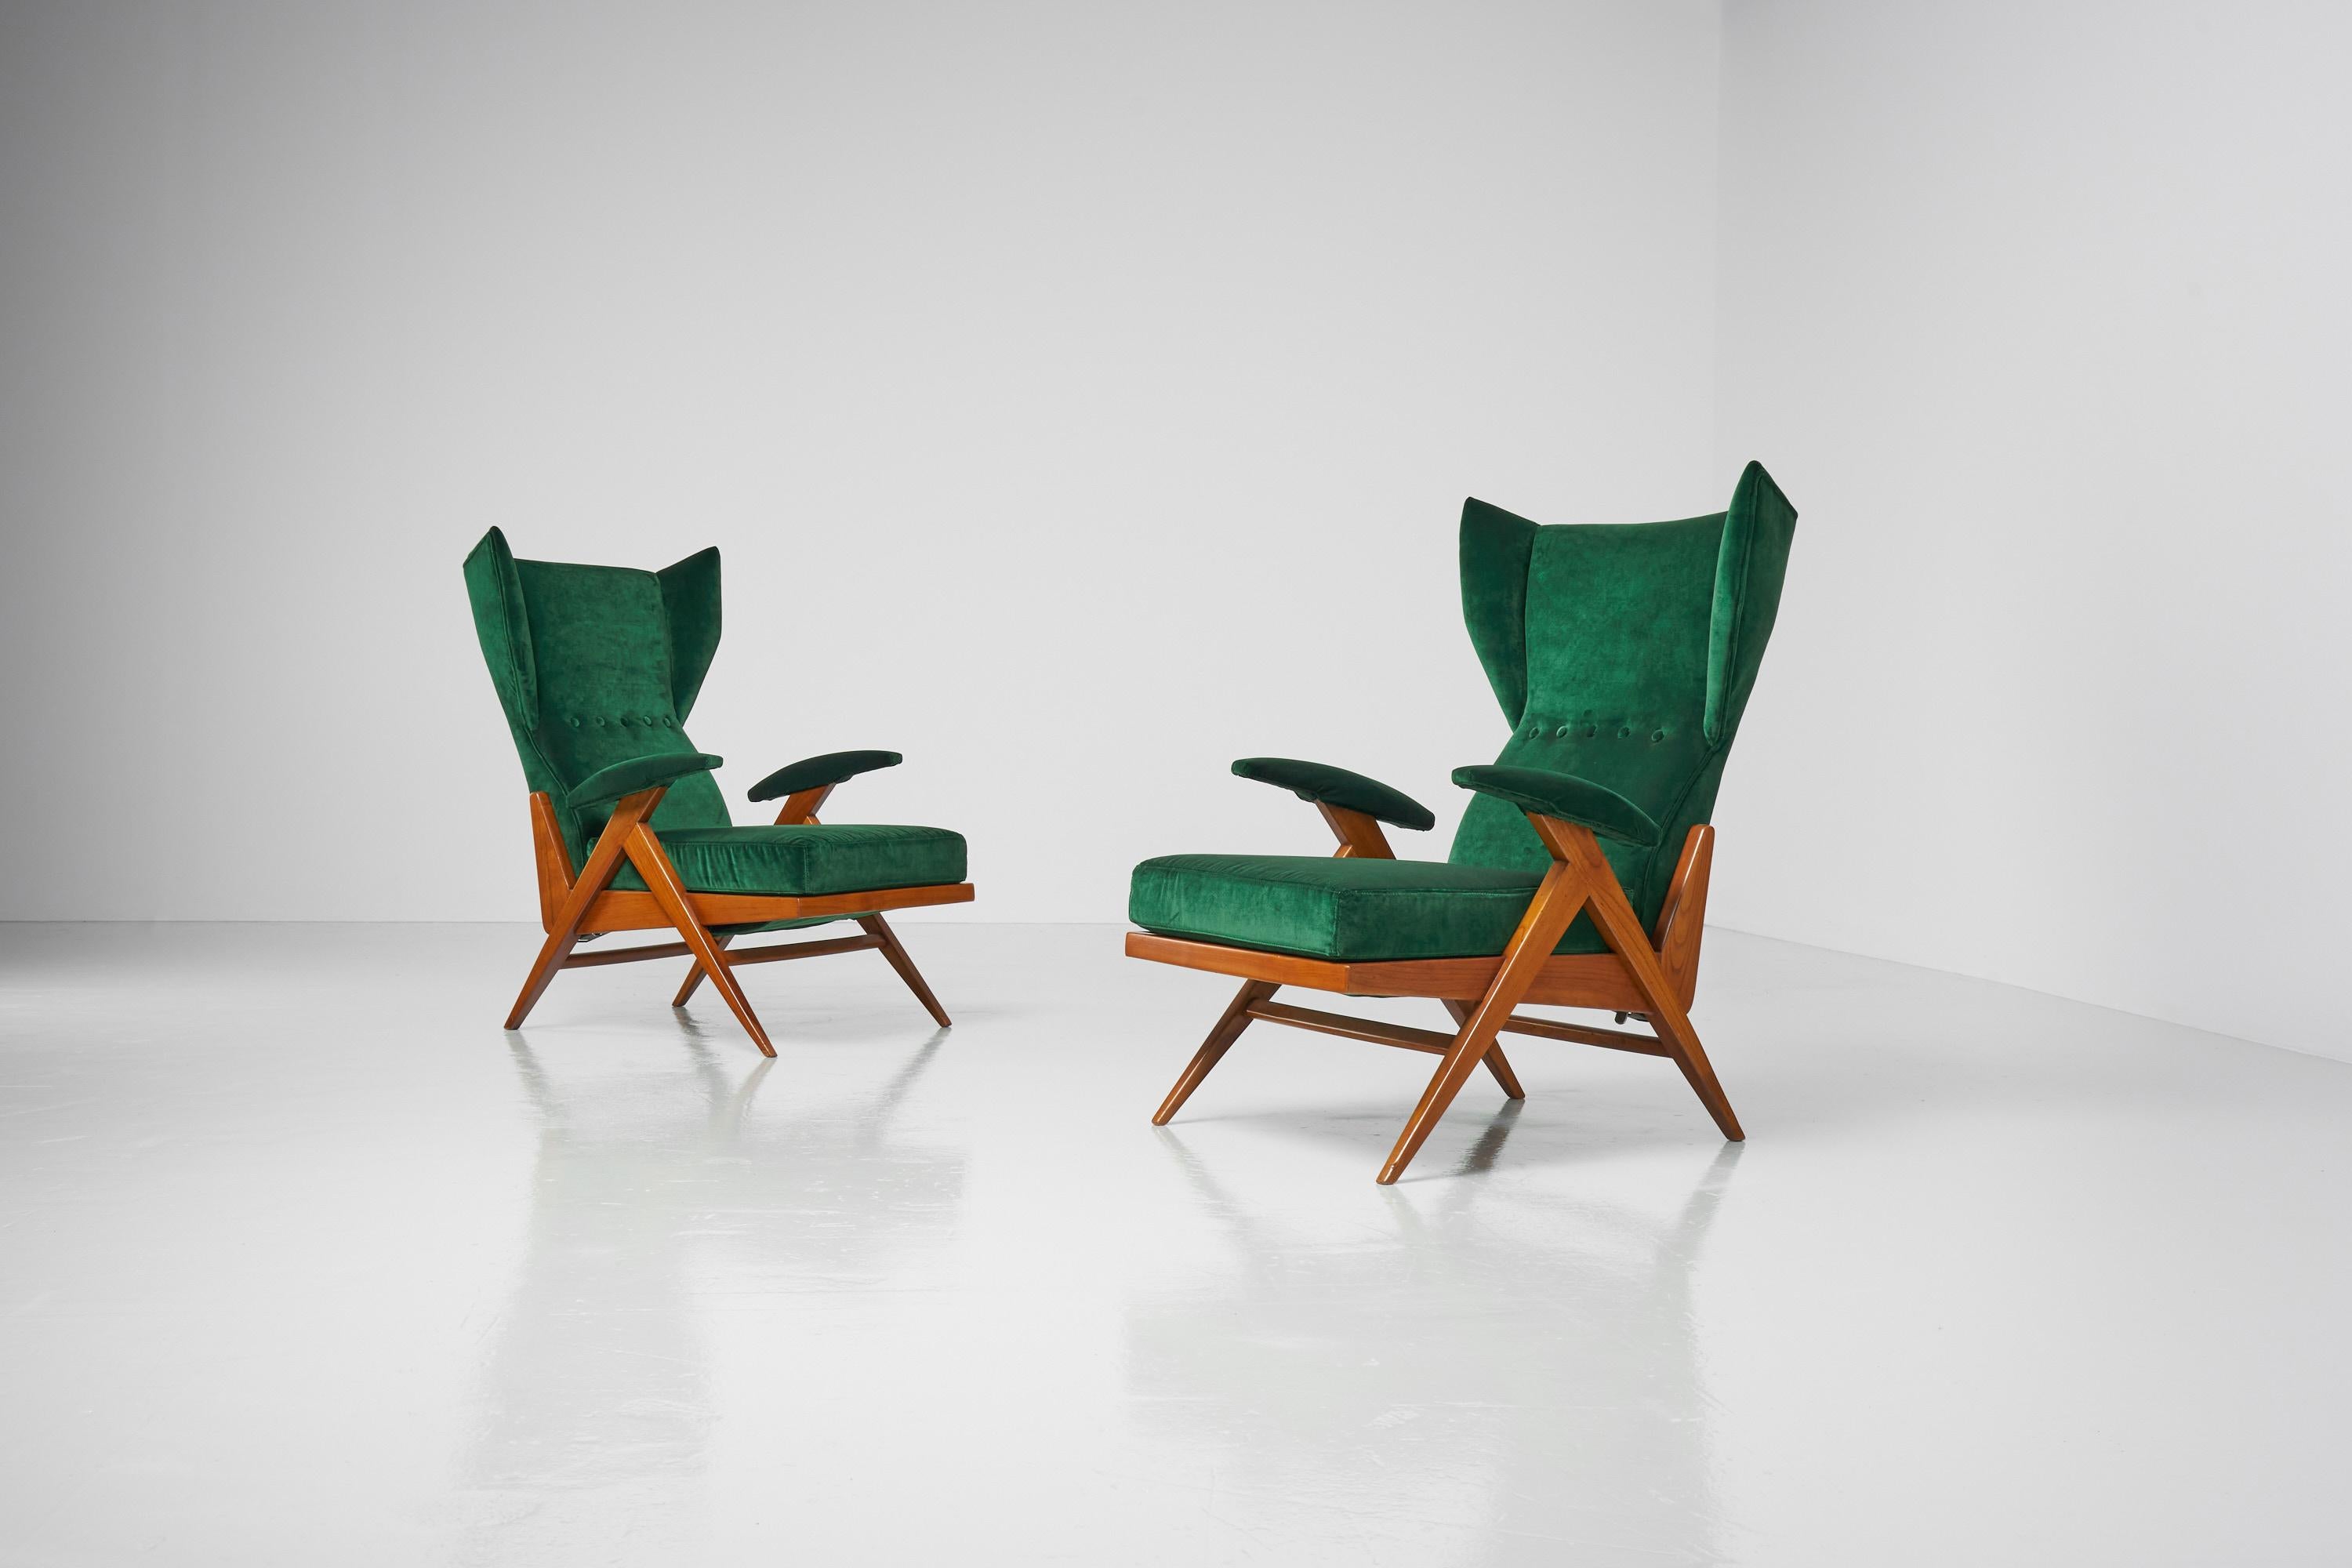 Superbe paire de chaises longues réglables 'Camea', conçue par Renzo Franchi et fabriquée par Camea, Italie, 1955. Ces chaises aux formes dynamiques ont une structure solide en bois de cerisier, et elles ont été récemment retapissées dans un